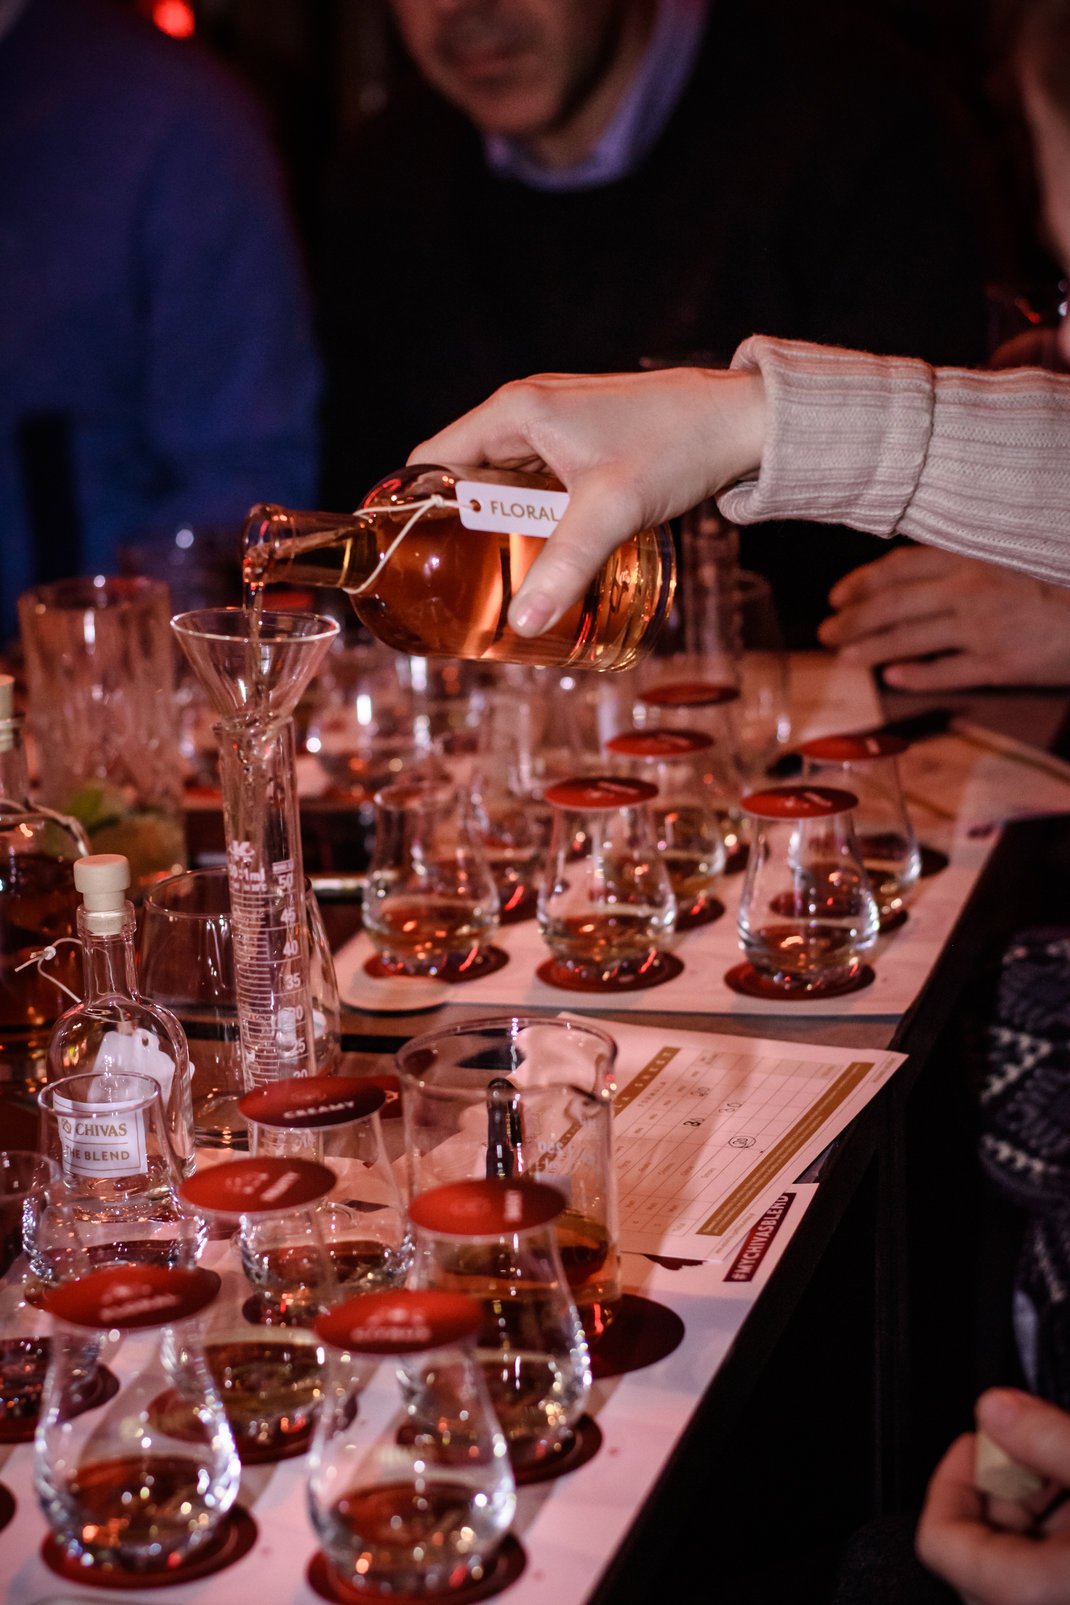 6. Η τέχνη του whisky blending οδήγησε τους συμμετέχοντες σε νέους γευστικούς ορίζοντες 